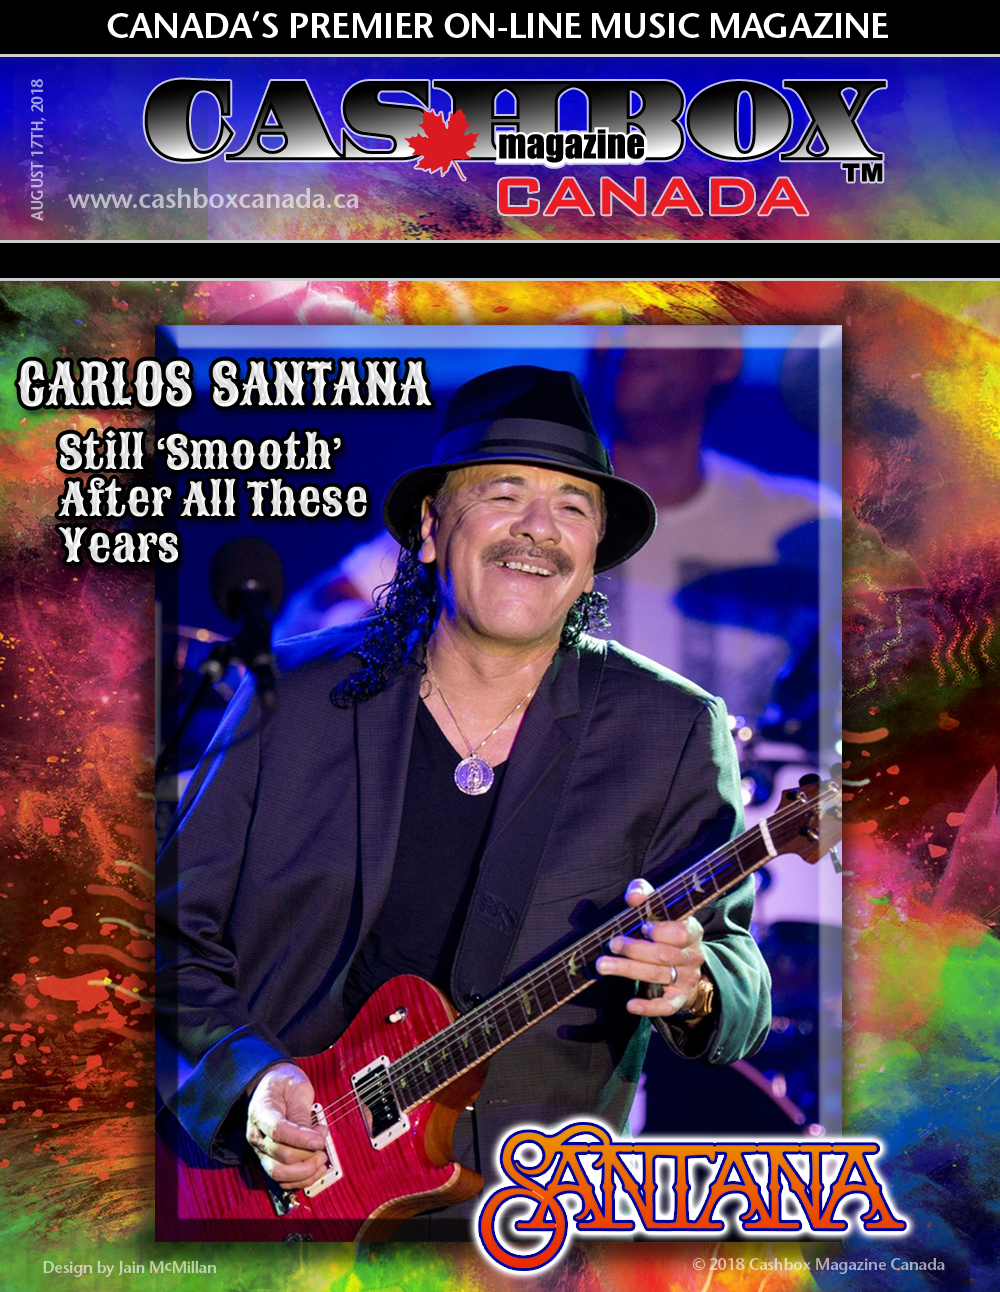 Carlos Santana Up Close and Personal